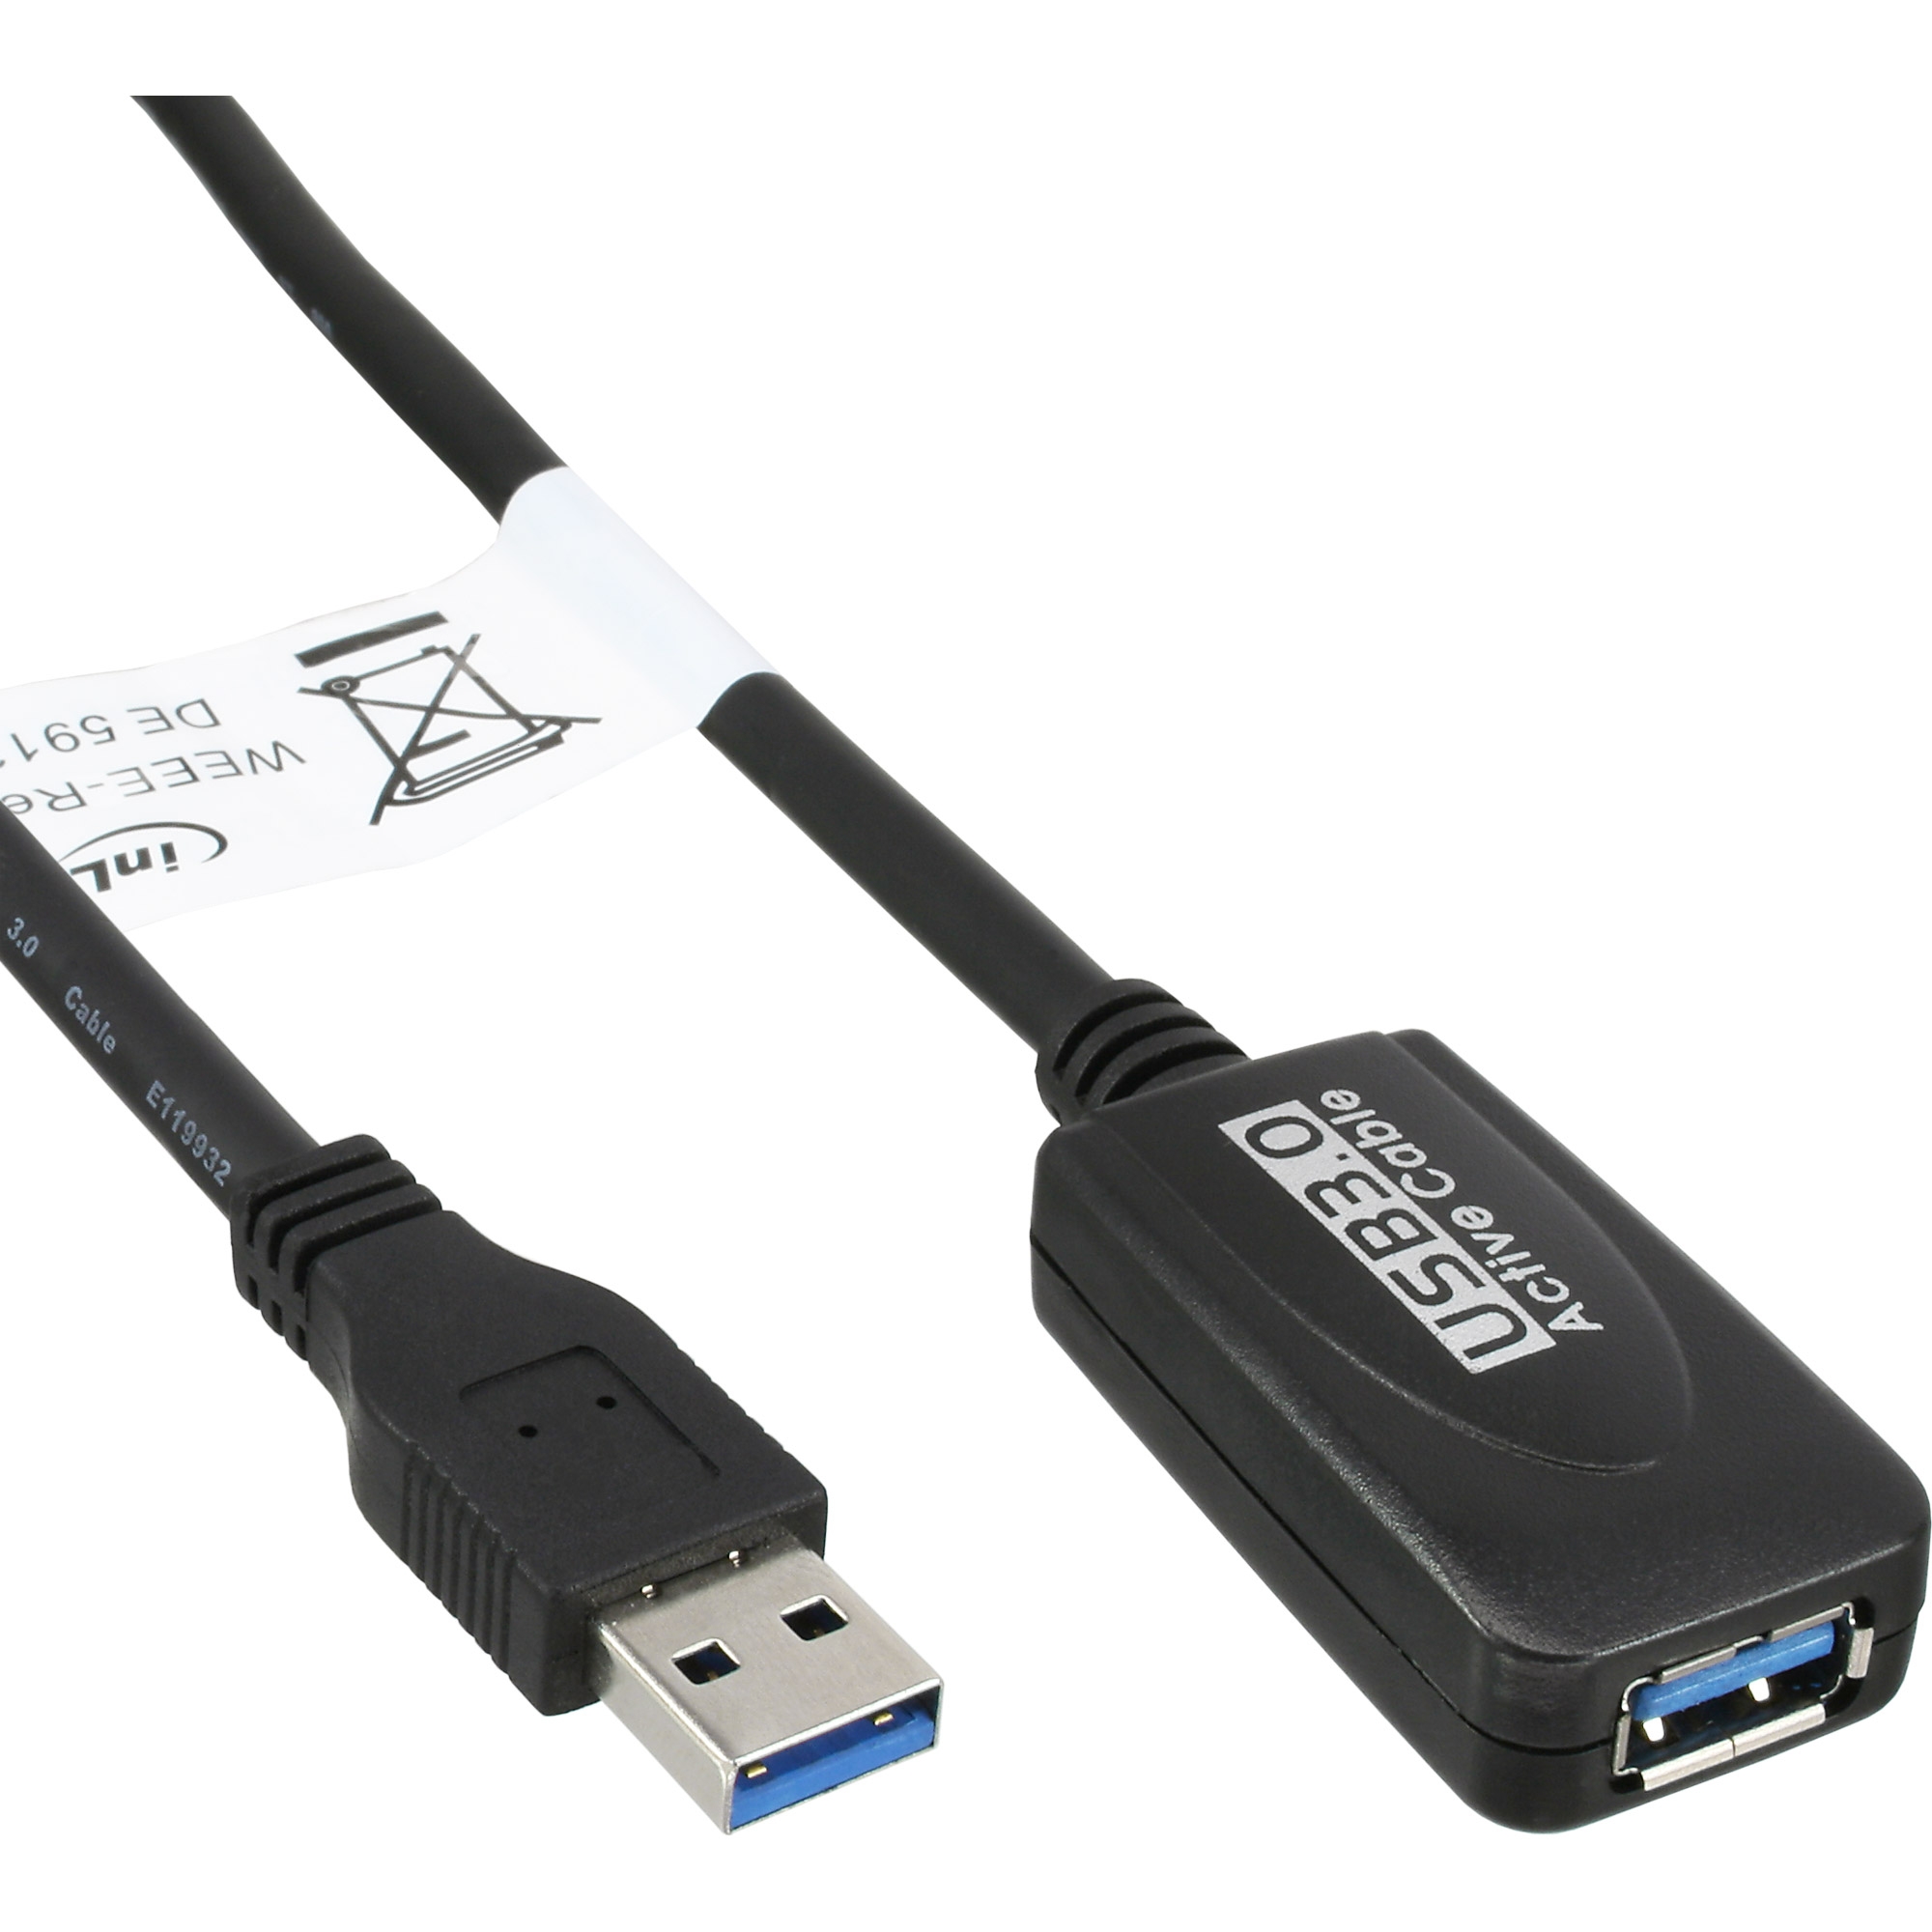 Kabel USB 3.1 Gen. 2 Key A 20 Pin Stecker an USB 3.1 Gen. 2 USB